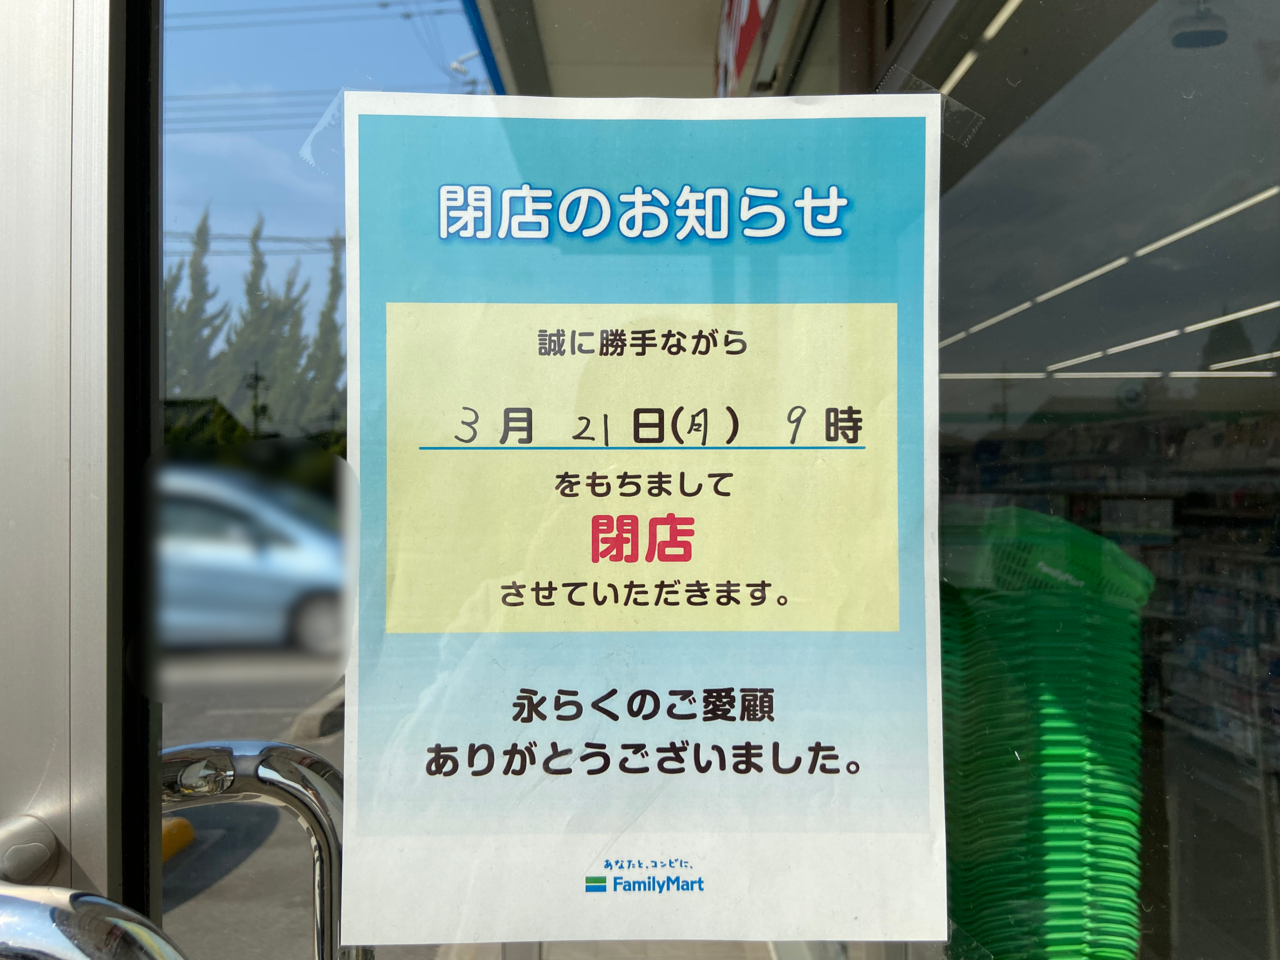 ファミリーマート平田西店閉店のお知らせ